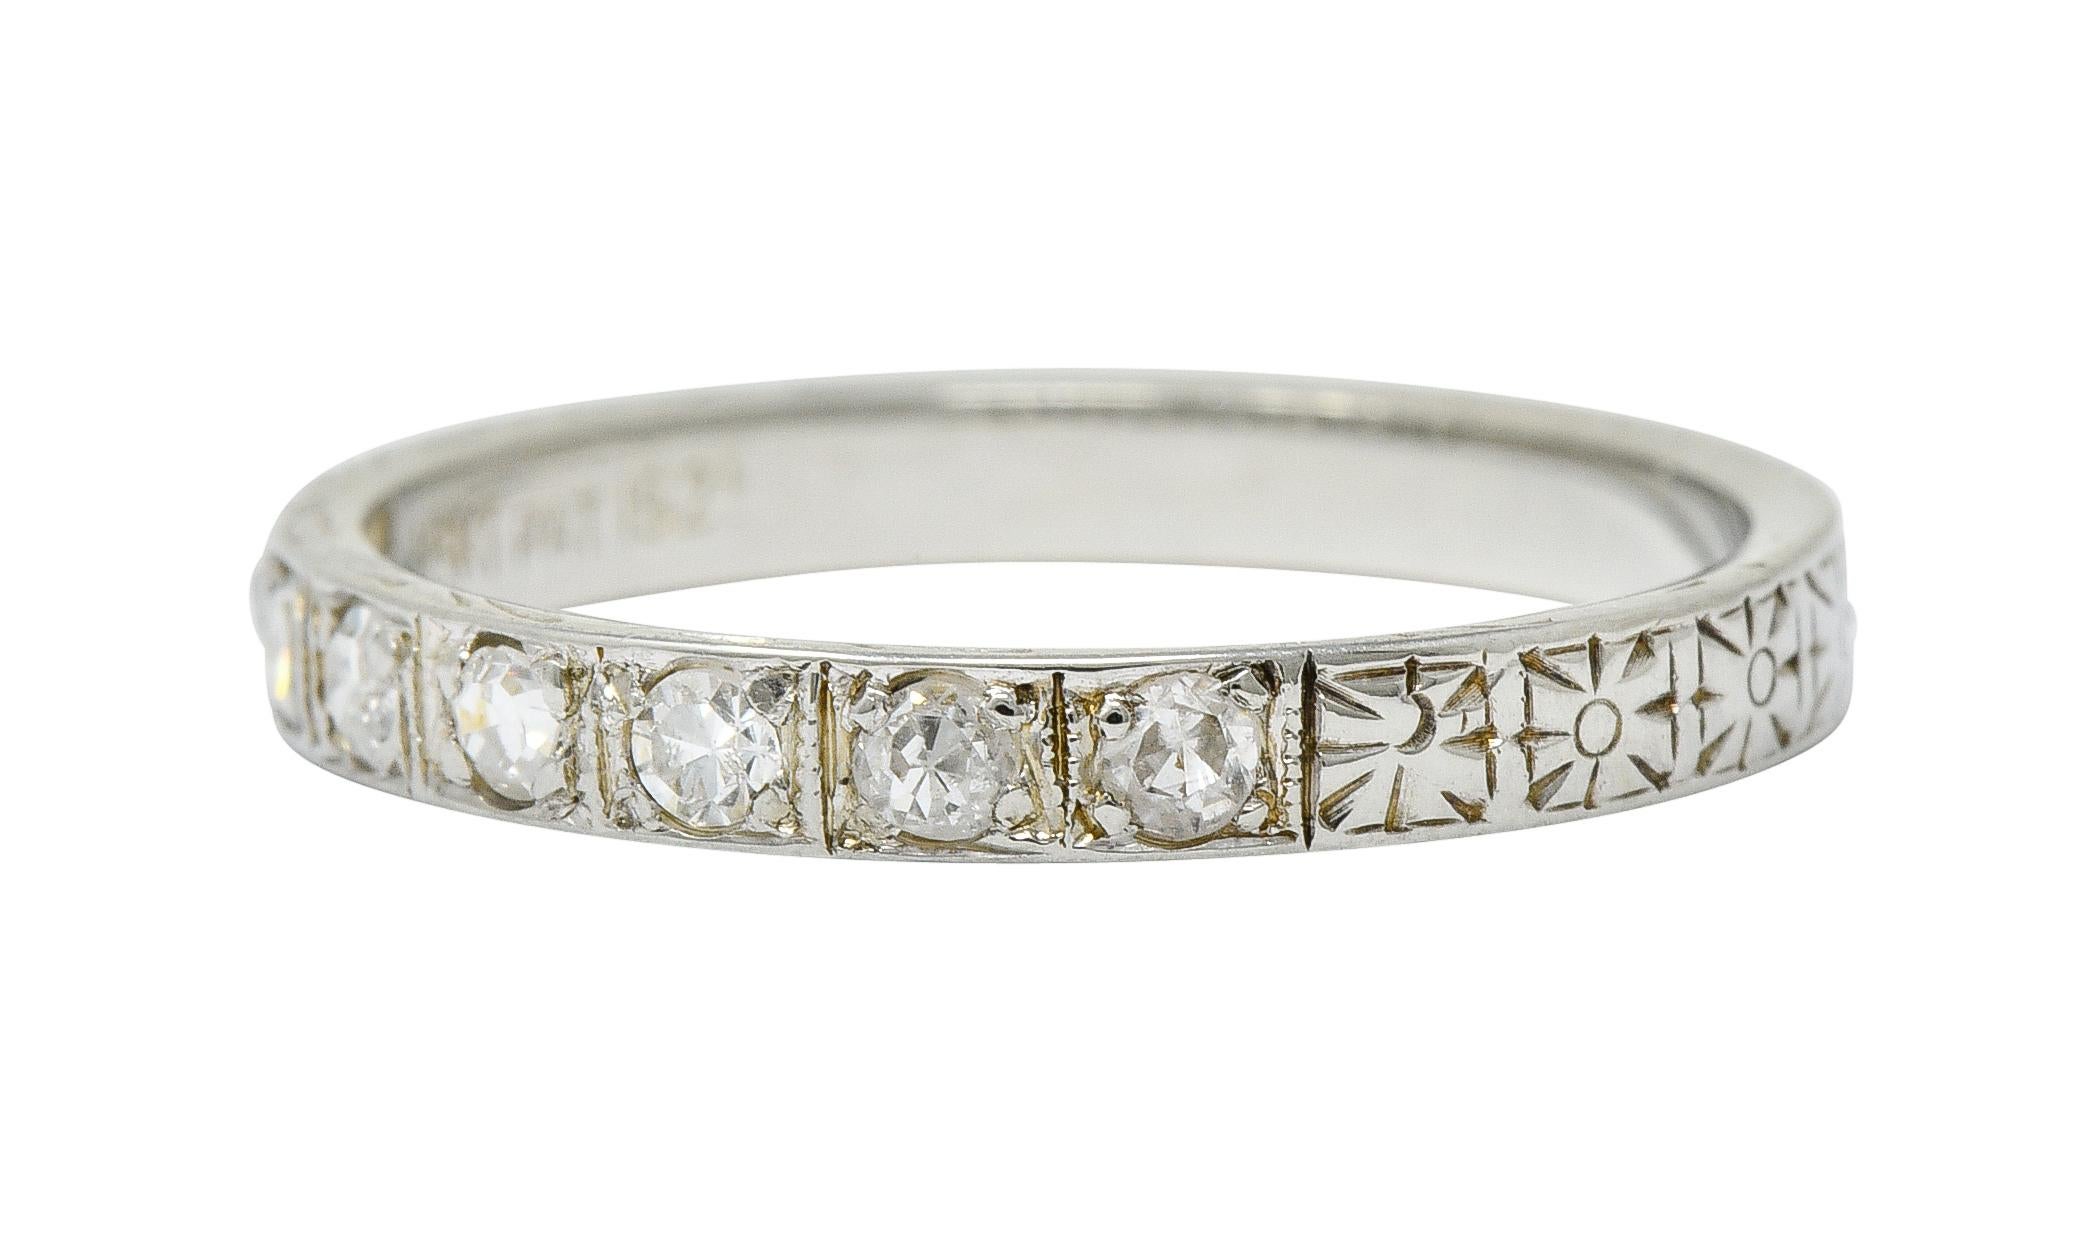 1925 Art Deco Diamond 18 Karat White Gold Orange Blossom Band Ring 2